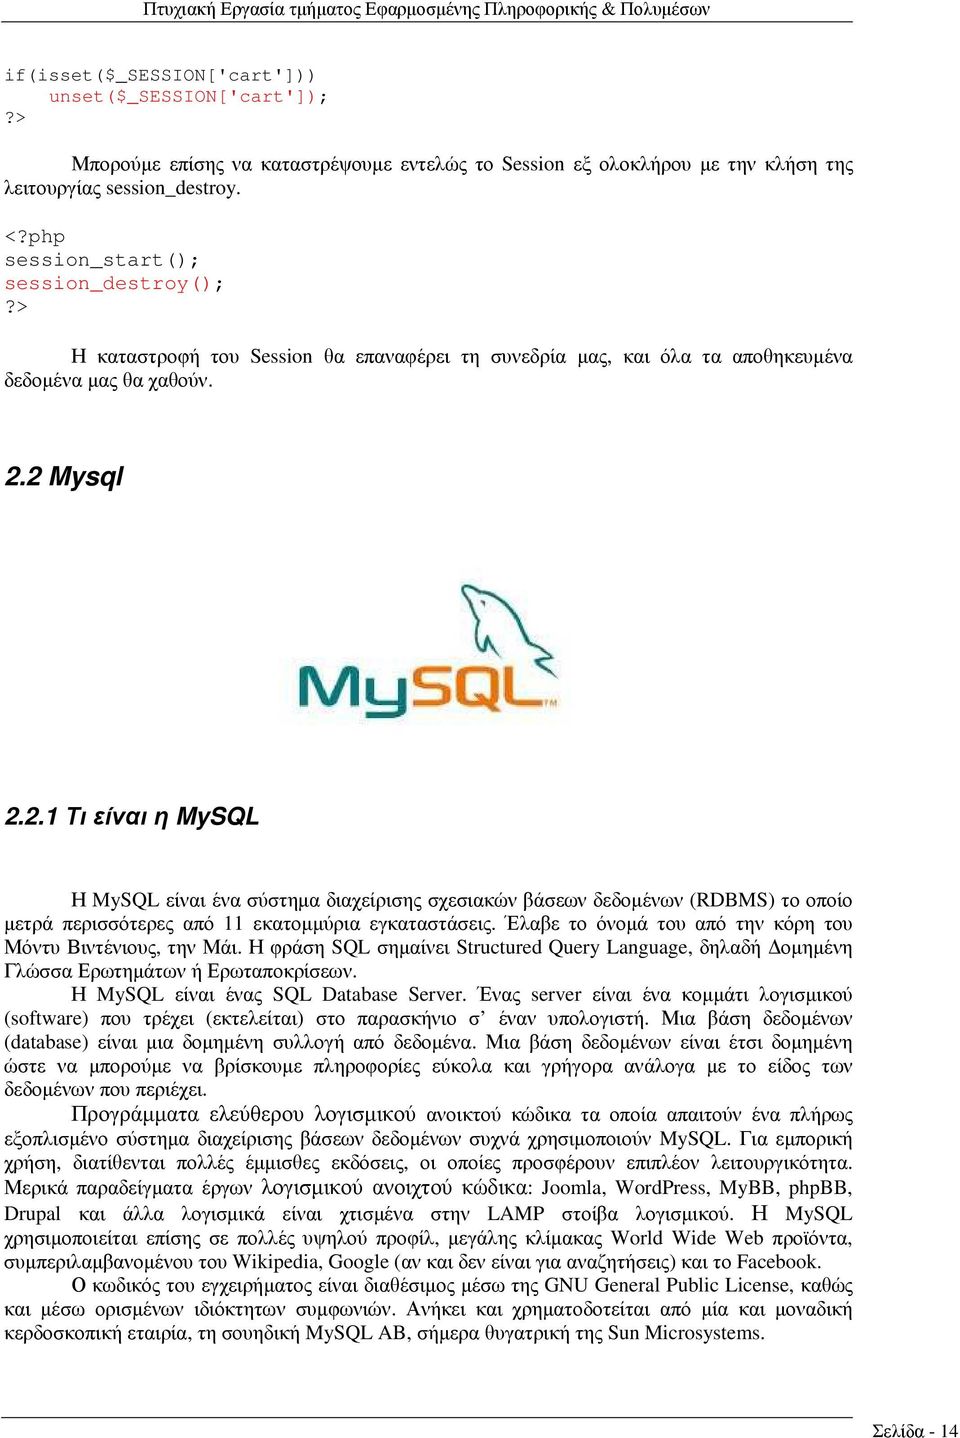 2 Mysql 2.2.1 Τι είναι η MySQL Η MySQL είναι ένα σύστηµα διαχείρισης σχεσιακών βάσεων δεδοµένων (RDBMS) το οποίο µετρά περισσότερες από 11 εκατοµµύρια εγκαταστάσεις.